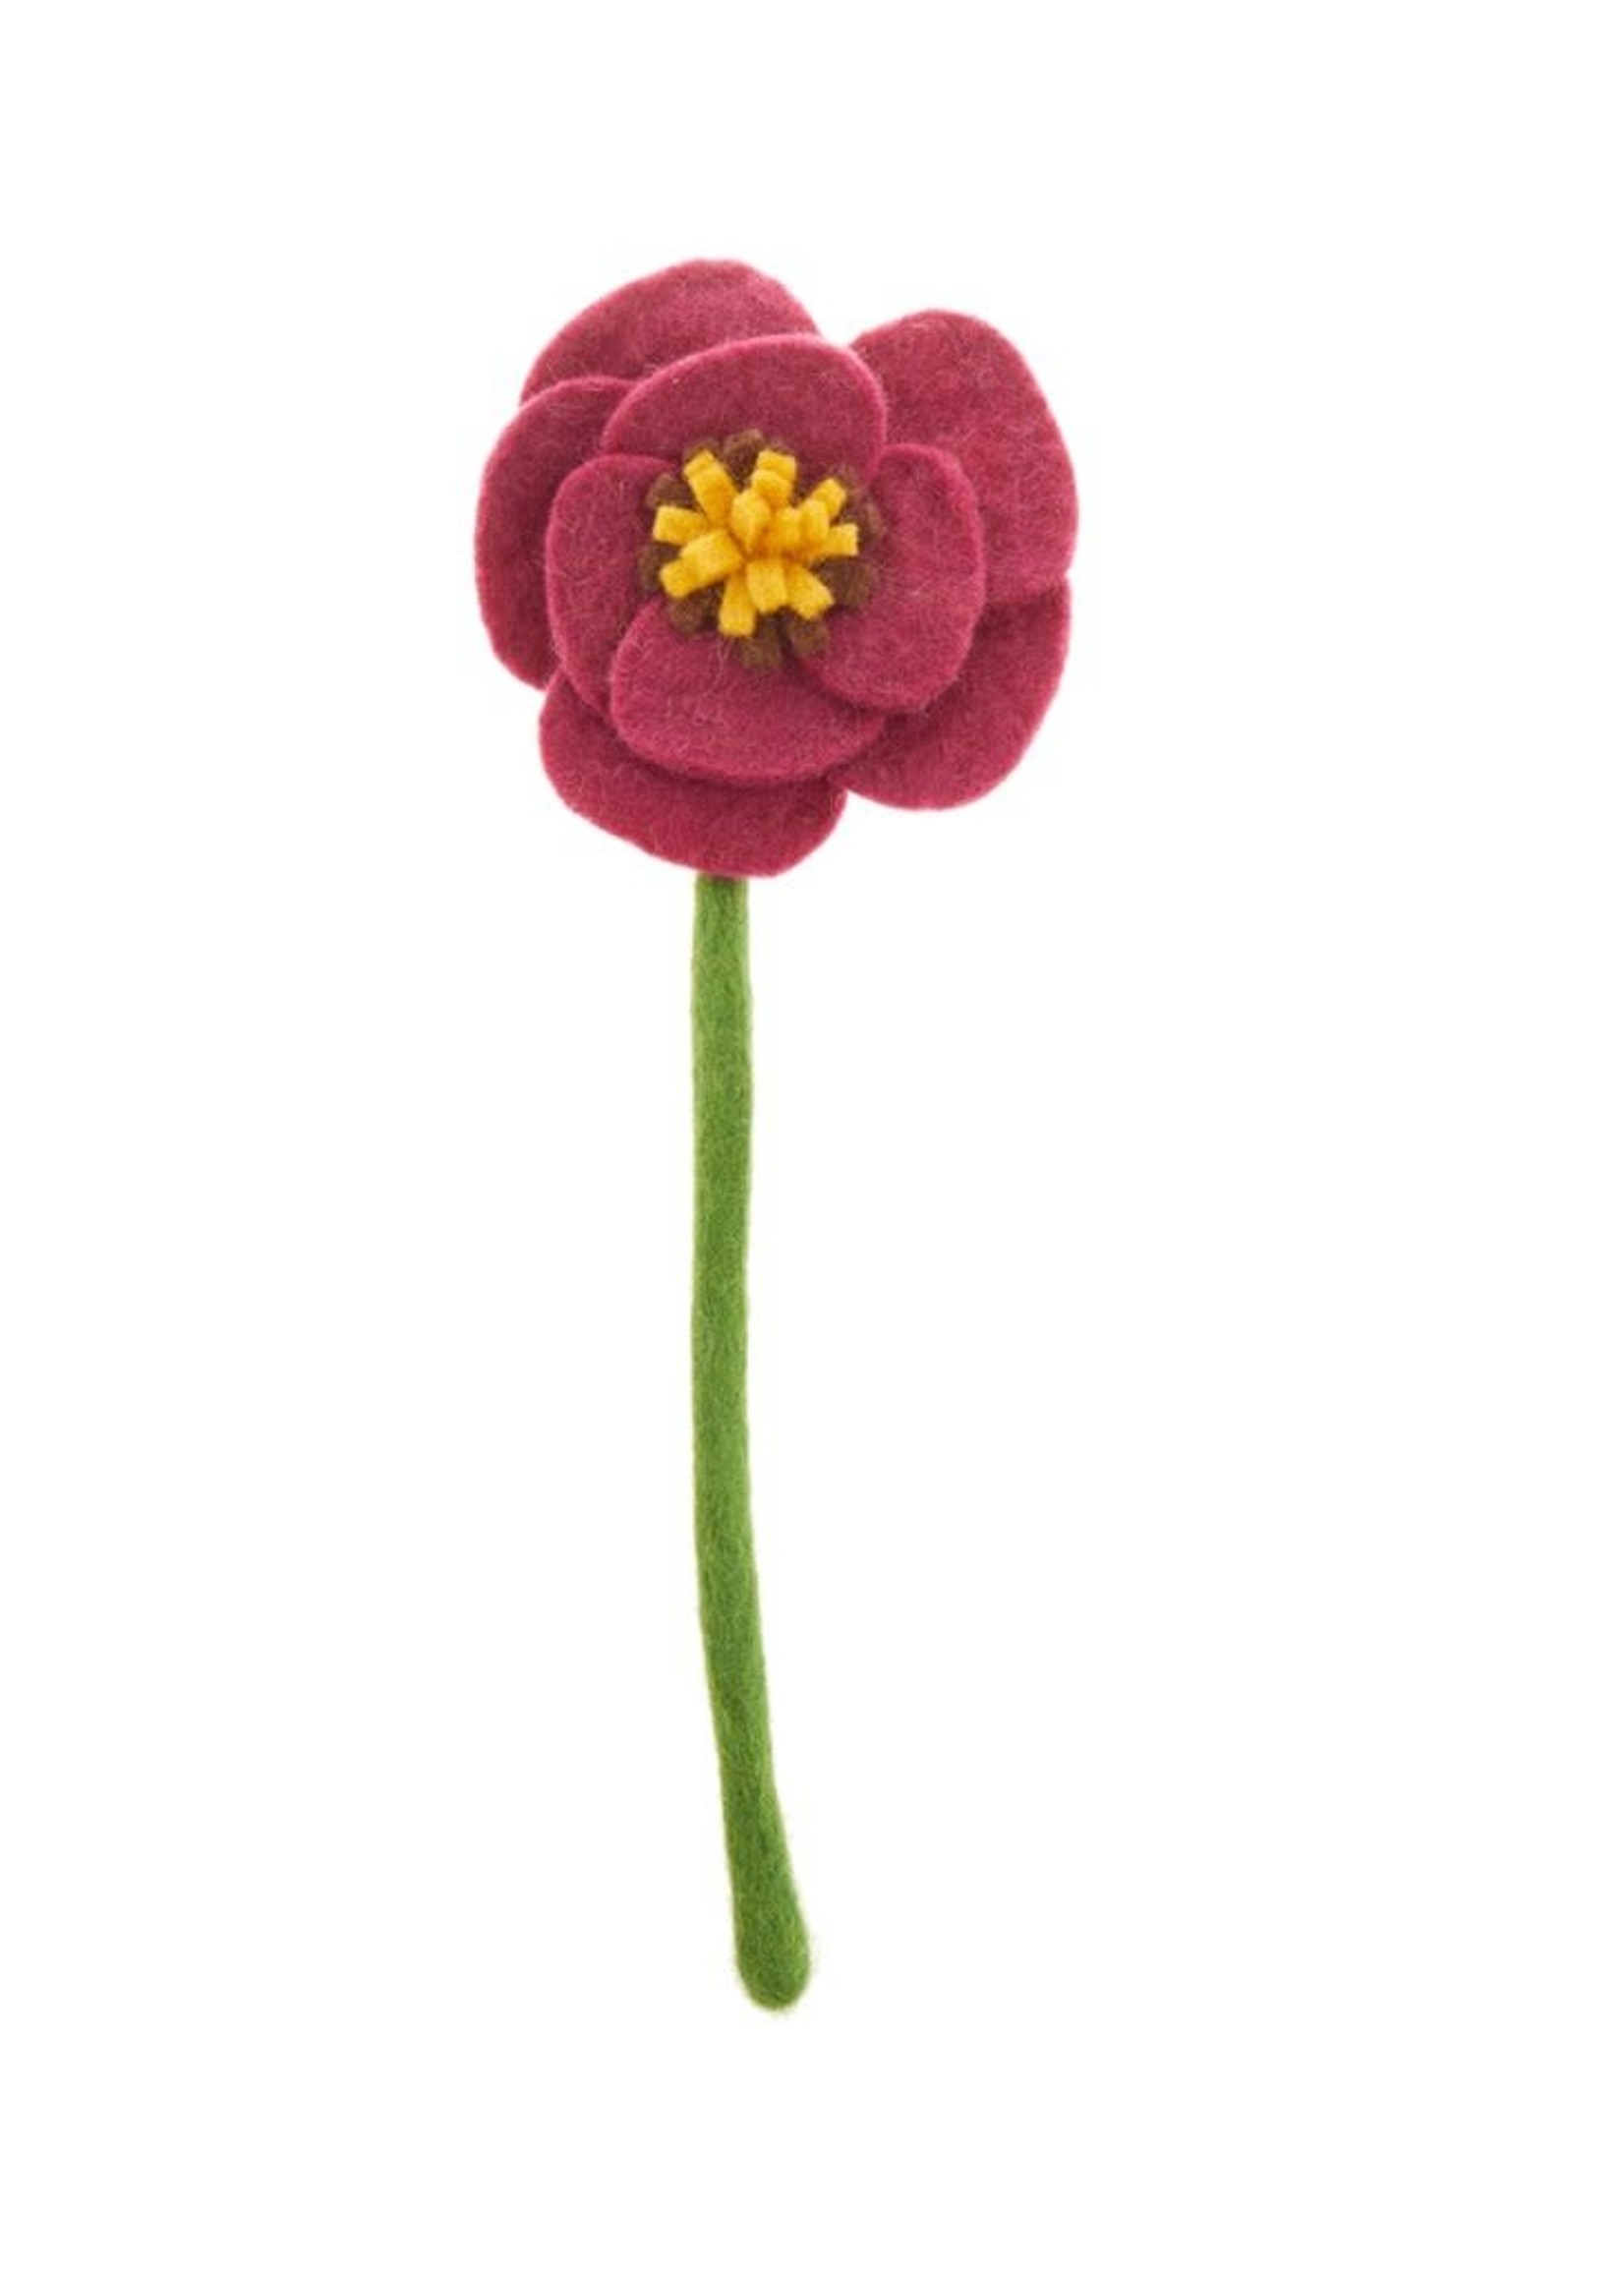 Global Goods Partners Felt Poppy Flower